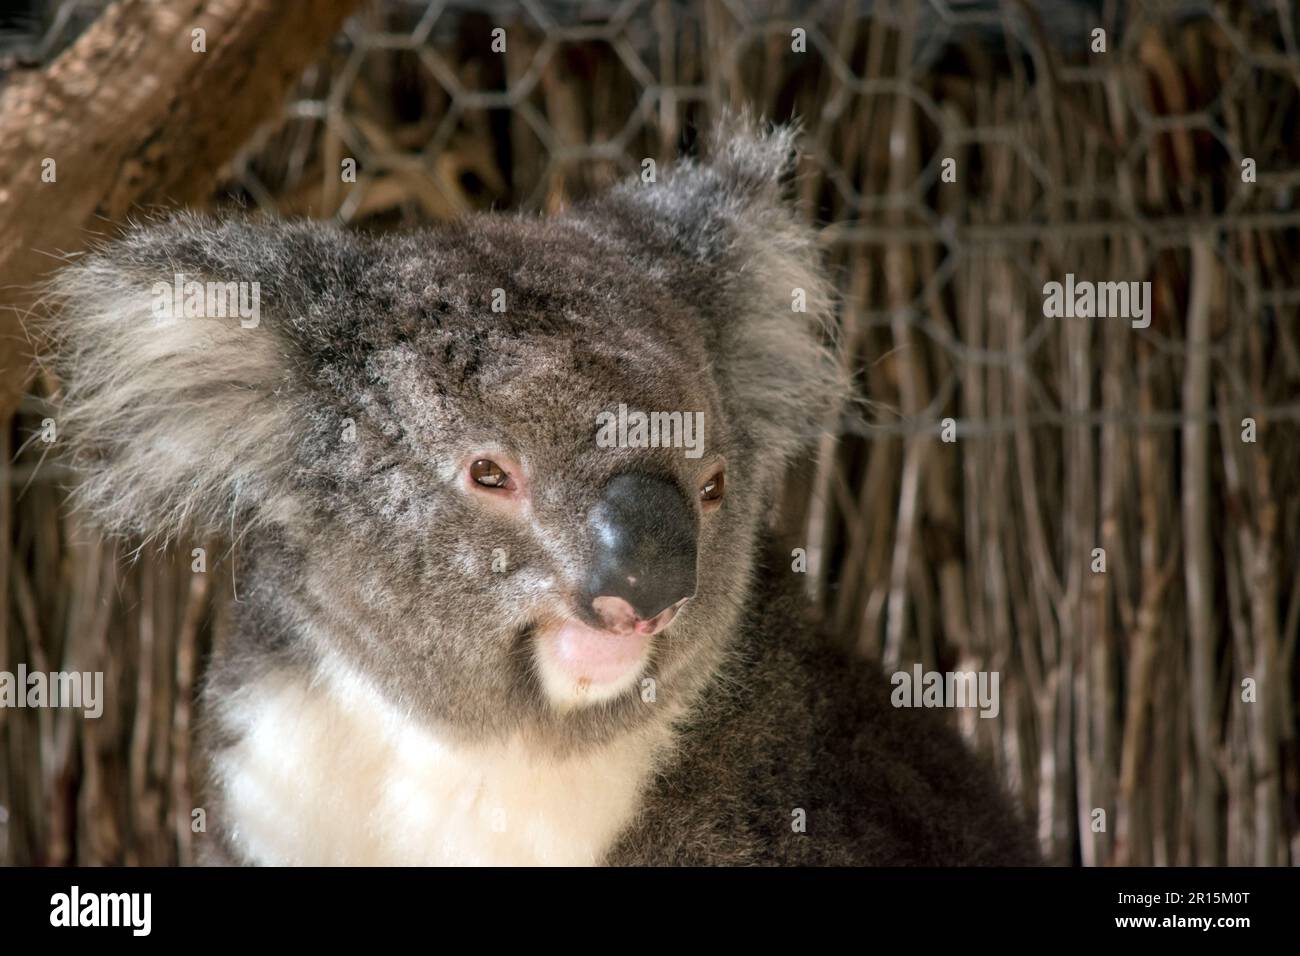 Der Koala hat einen großen runden Kopf, große pelzige Ohren und große  schwarze Nase. Ihr Fell ist meist grau-braun mit weißem Fell auf der Brust,  den inneren Armen Stockfotografie - Alamy